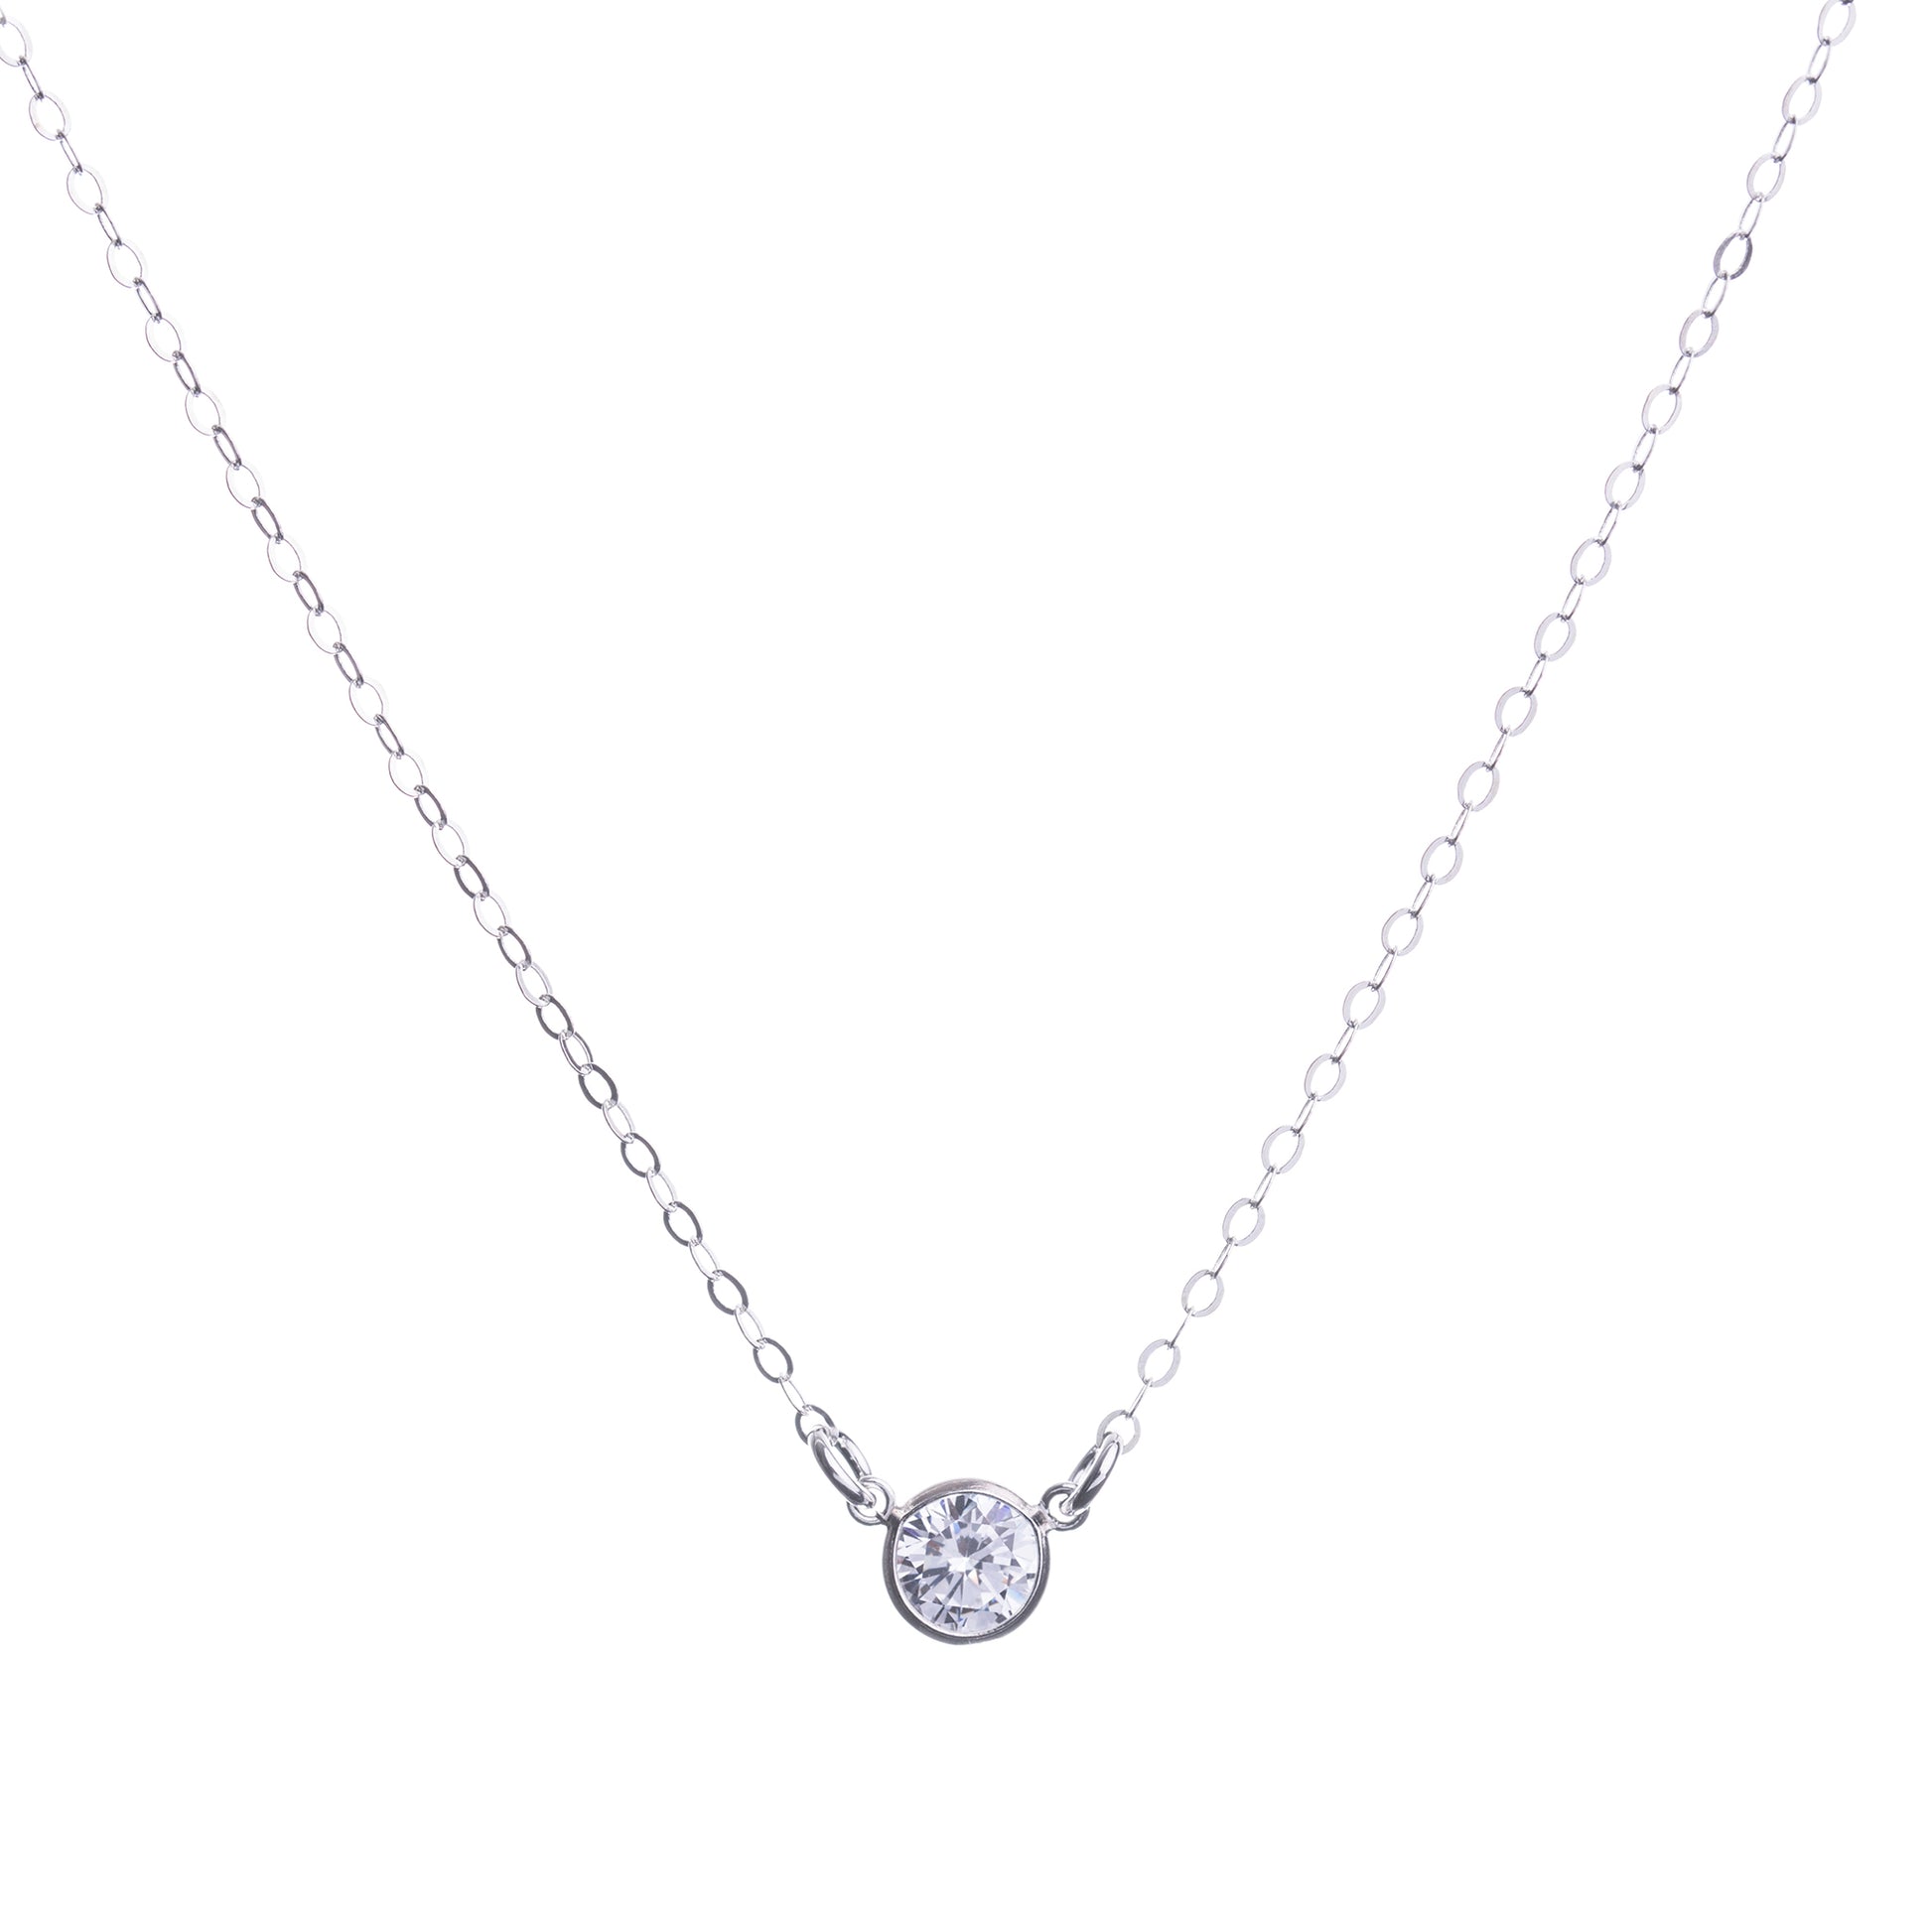 Minimal Sterling Silver CZ Diamond Necklace